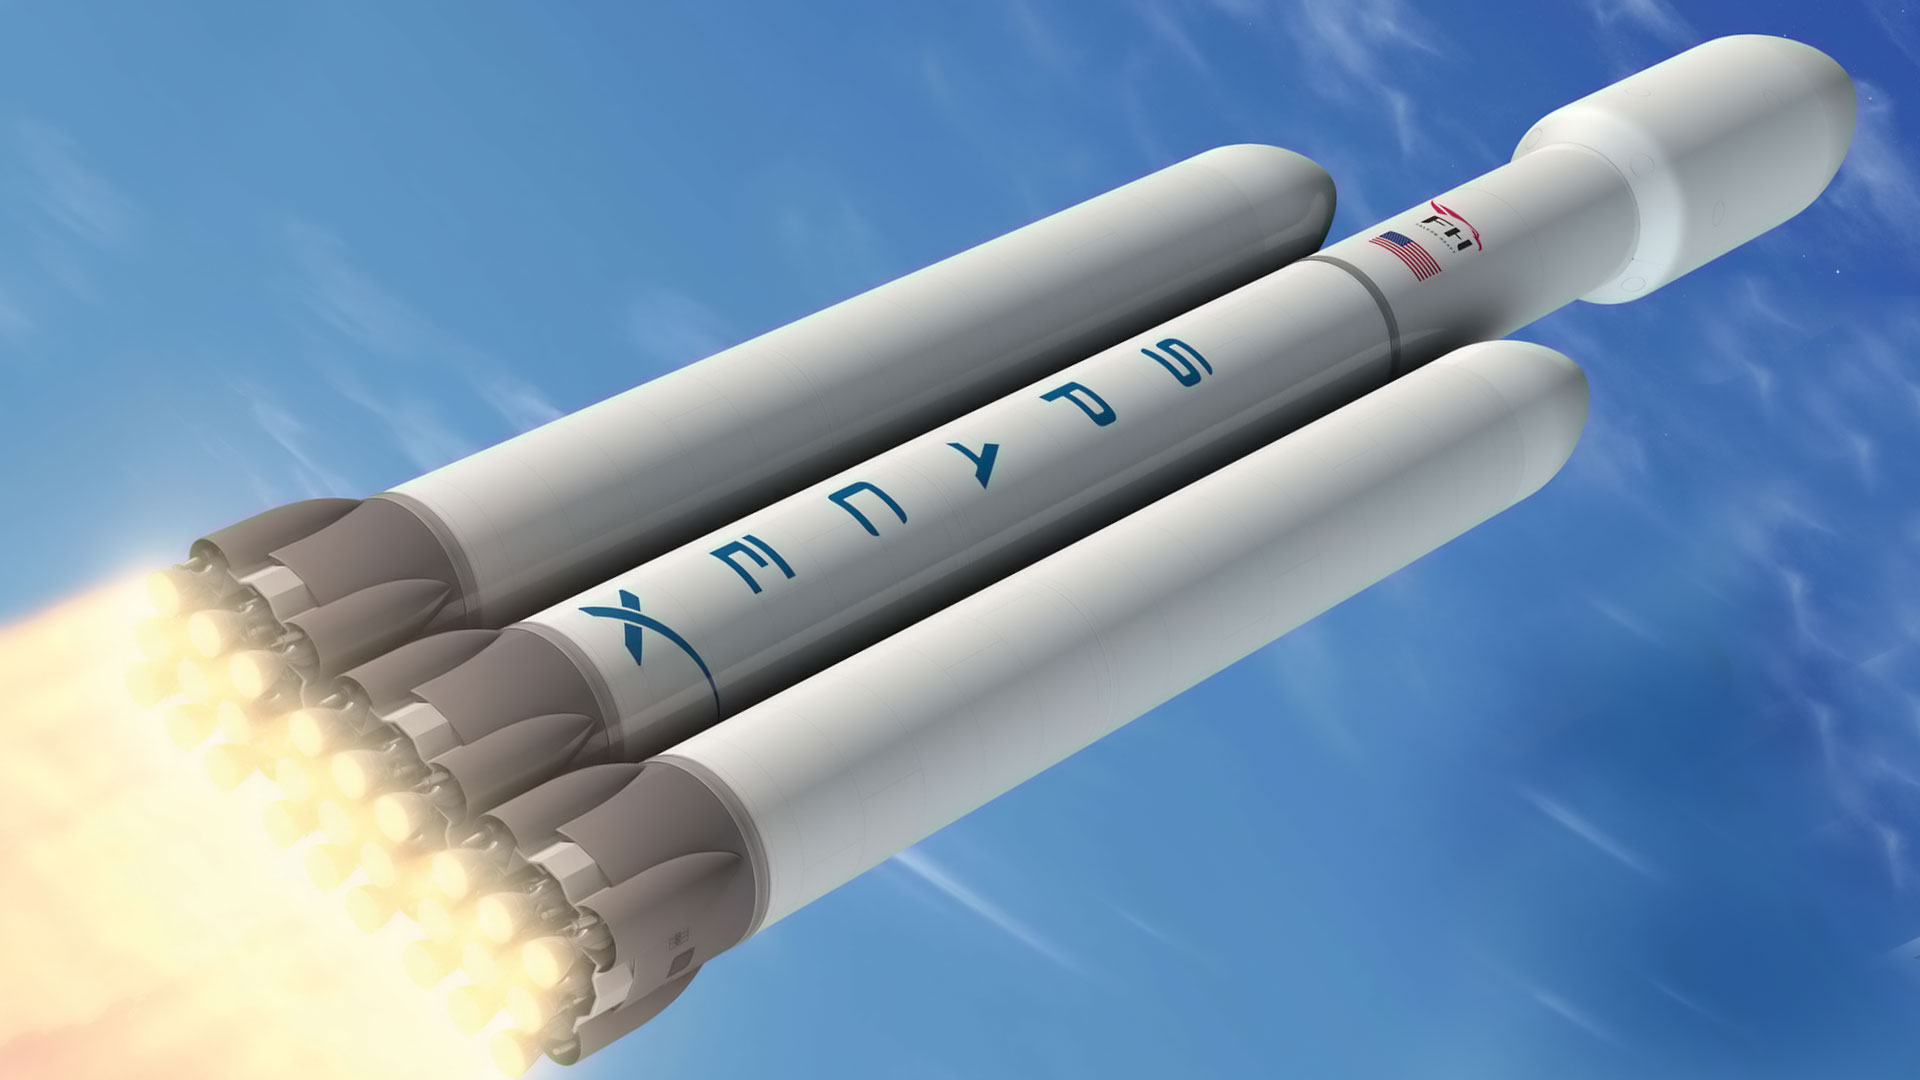 Un des quatre concepts de lanceur de nouvelle génération. Concept de lanceur bi-étage dénommé CH (propulsion méthane/oxygène liquide pour l’étage principal et propulsion cryogénique pour l’étage supérieur). Crédits Astrium / Esa